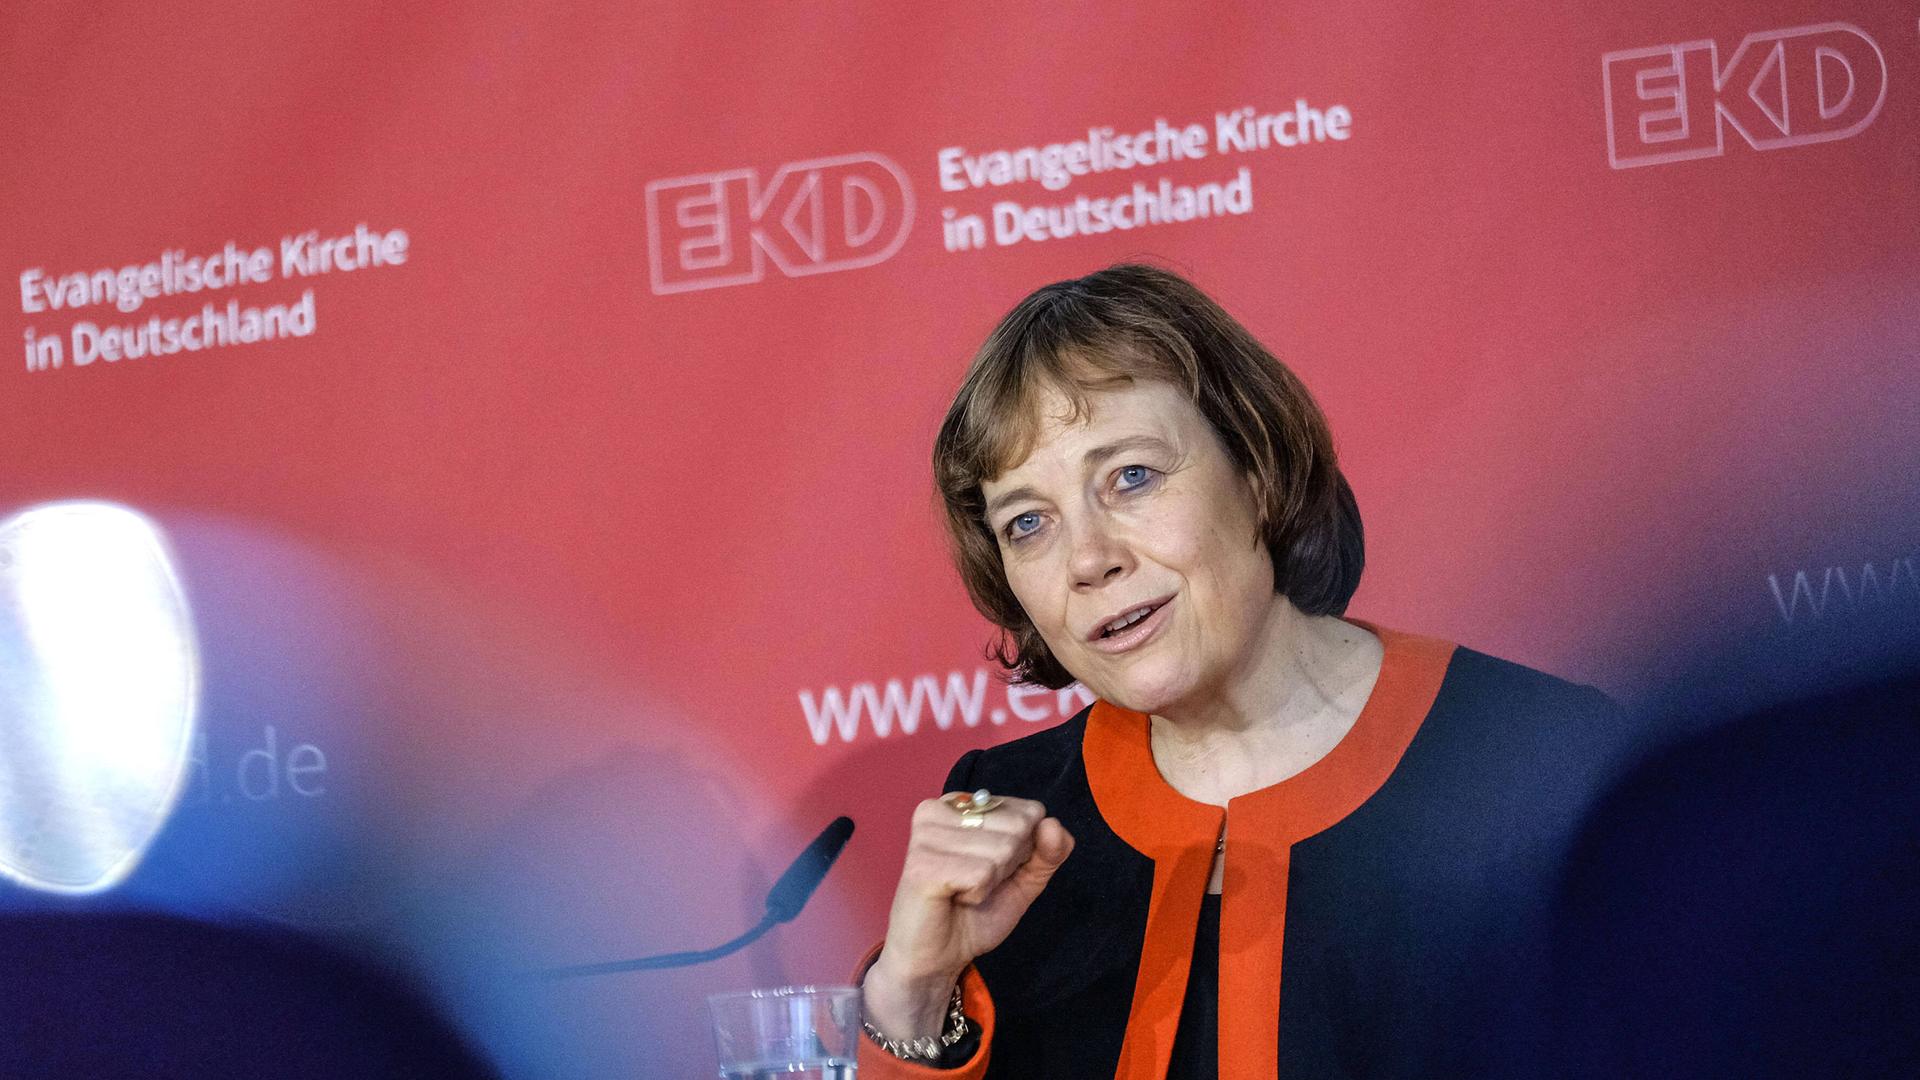 Pressekonferenz mit der der Ratsvorsitzenden der Evangelischen Kirche in Deutschland Annette Kurschus